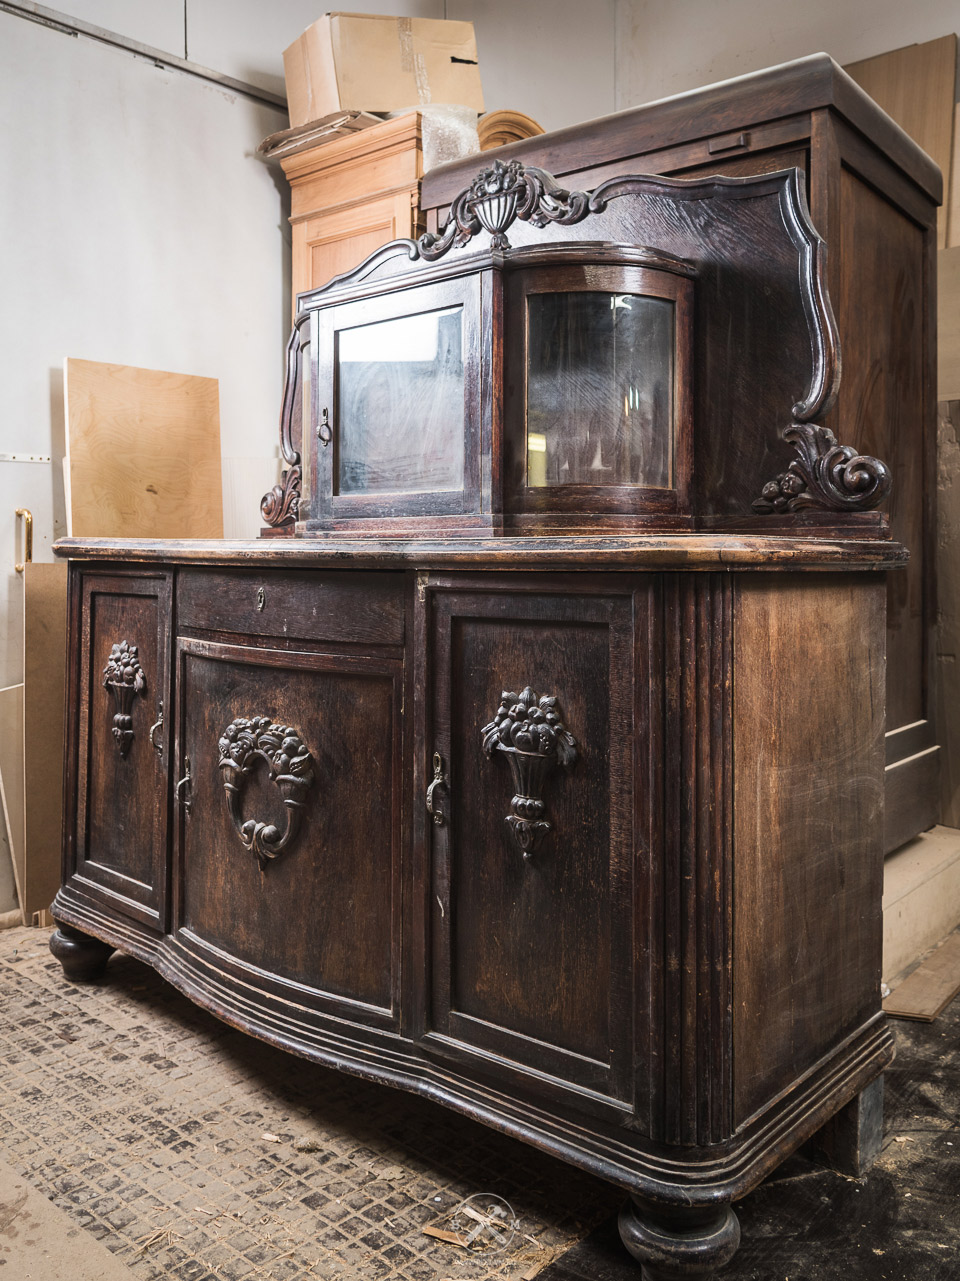 Фотографии антикварной мебели после реставрации